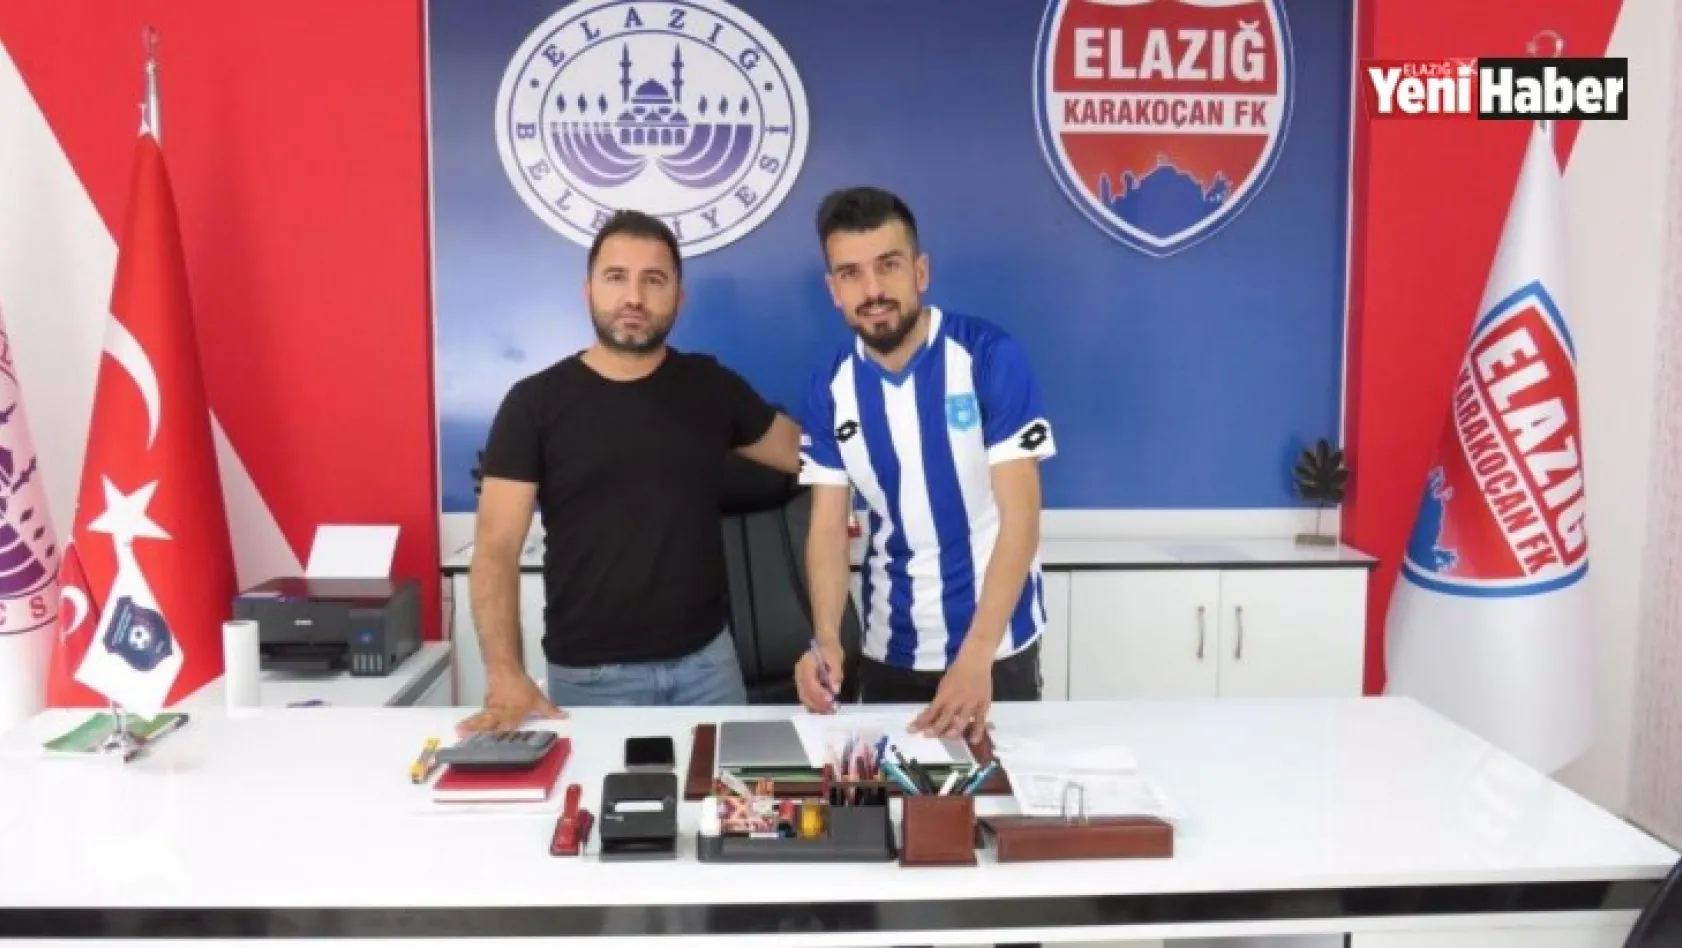 Karakoçan FK Cuma Ali Üzüm'ü Kadrosuna Kattı